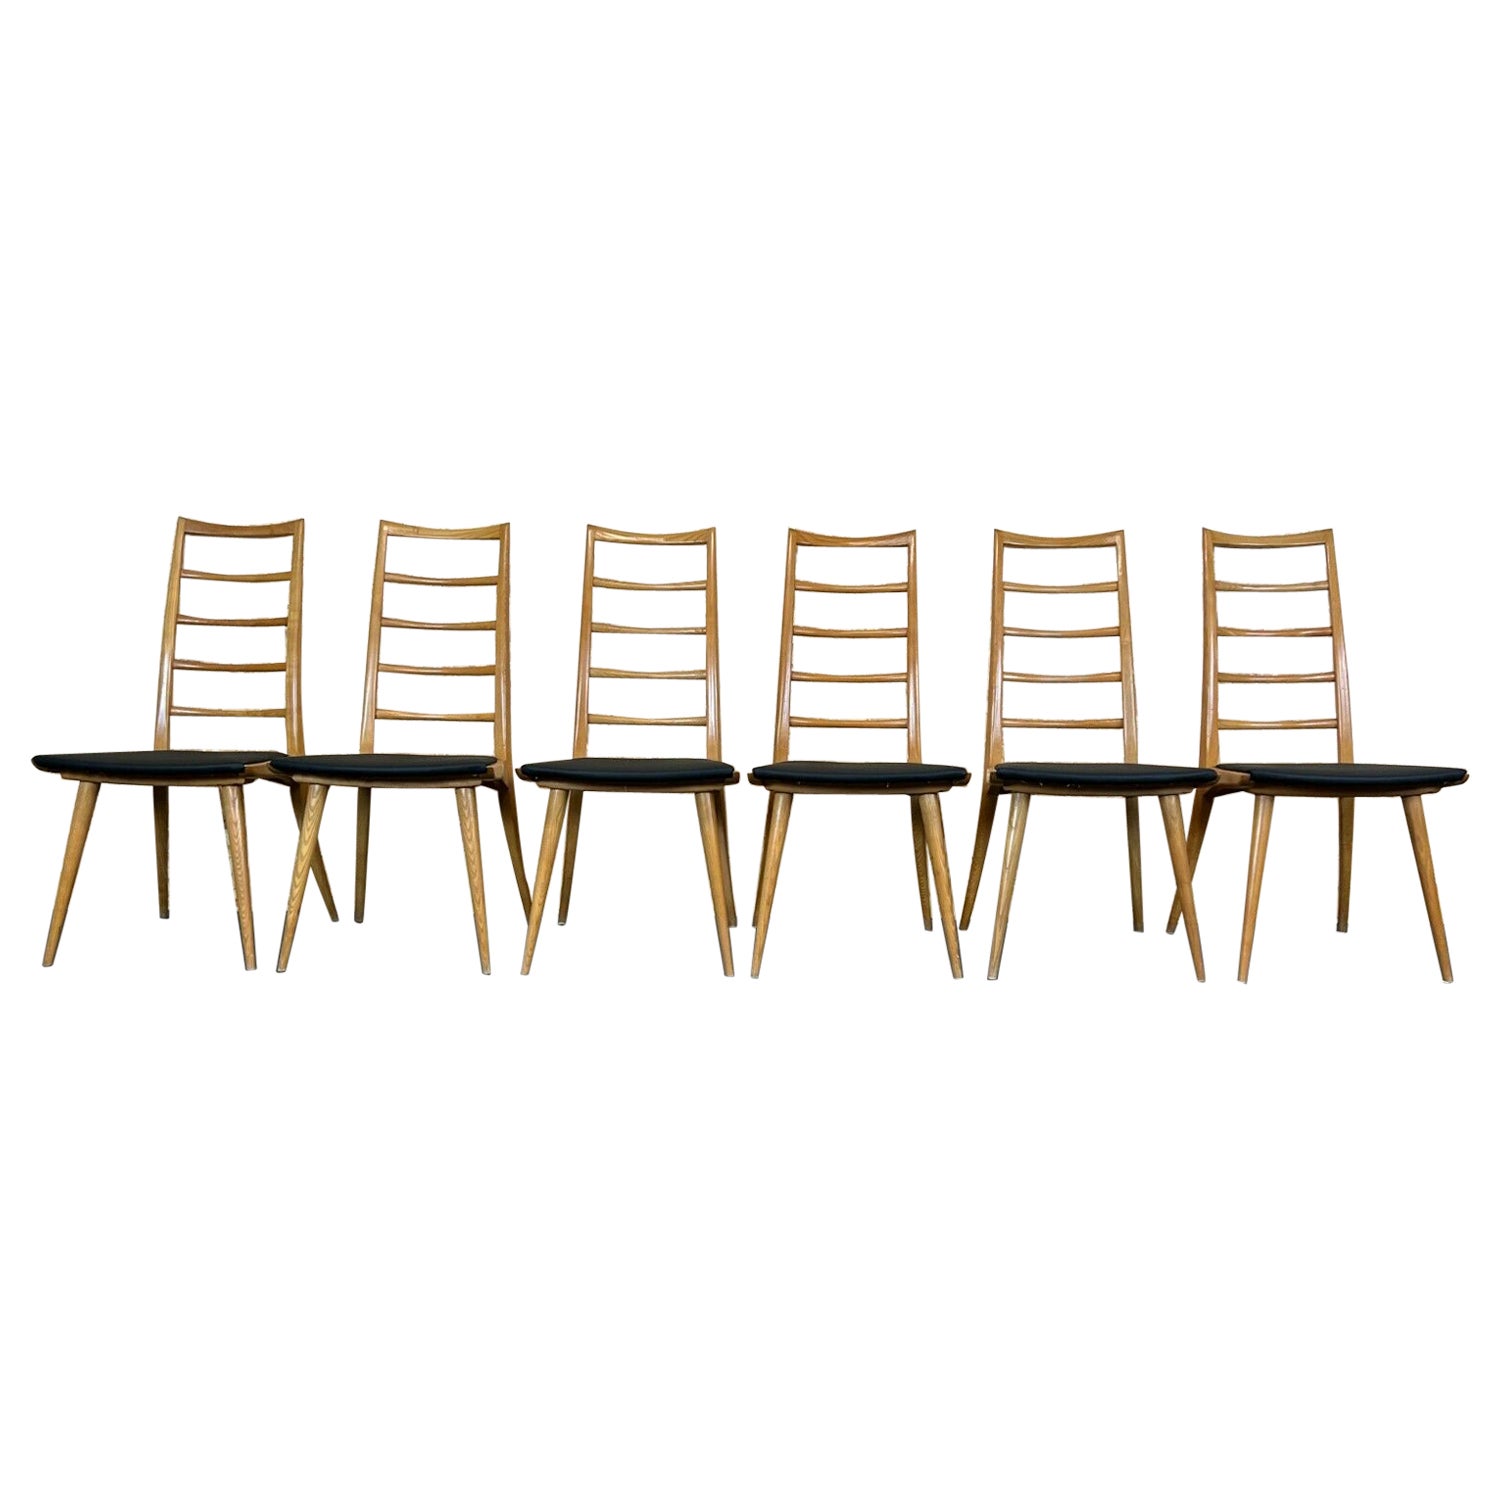 Chaises de salle à manger 6 x 60 des années 70, design danois, années 60